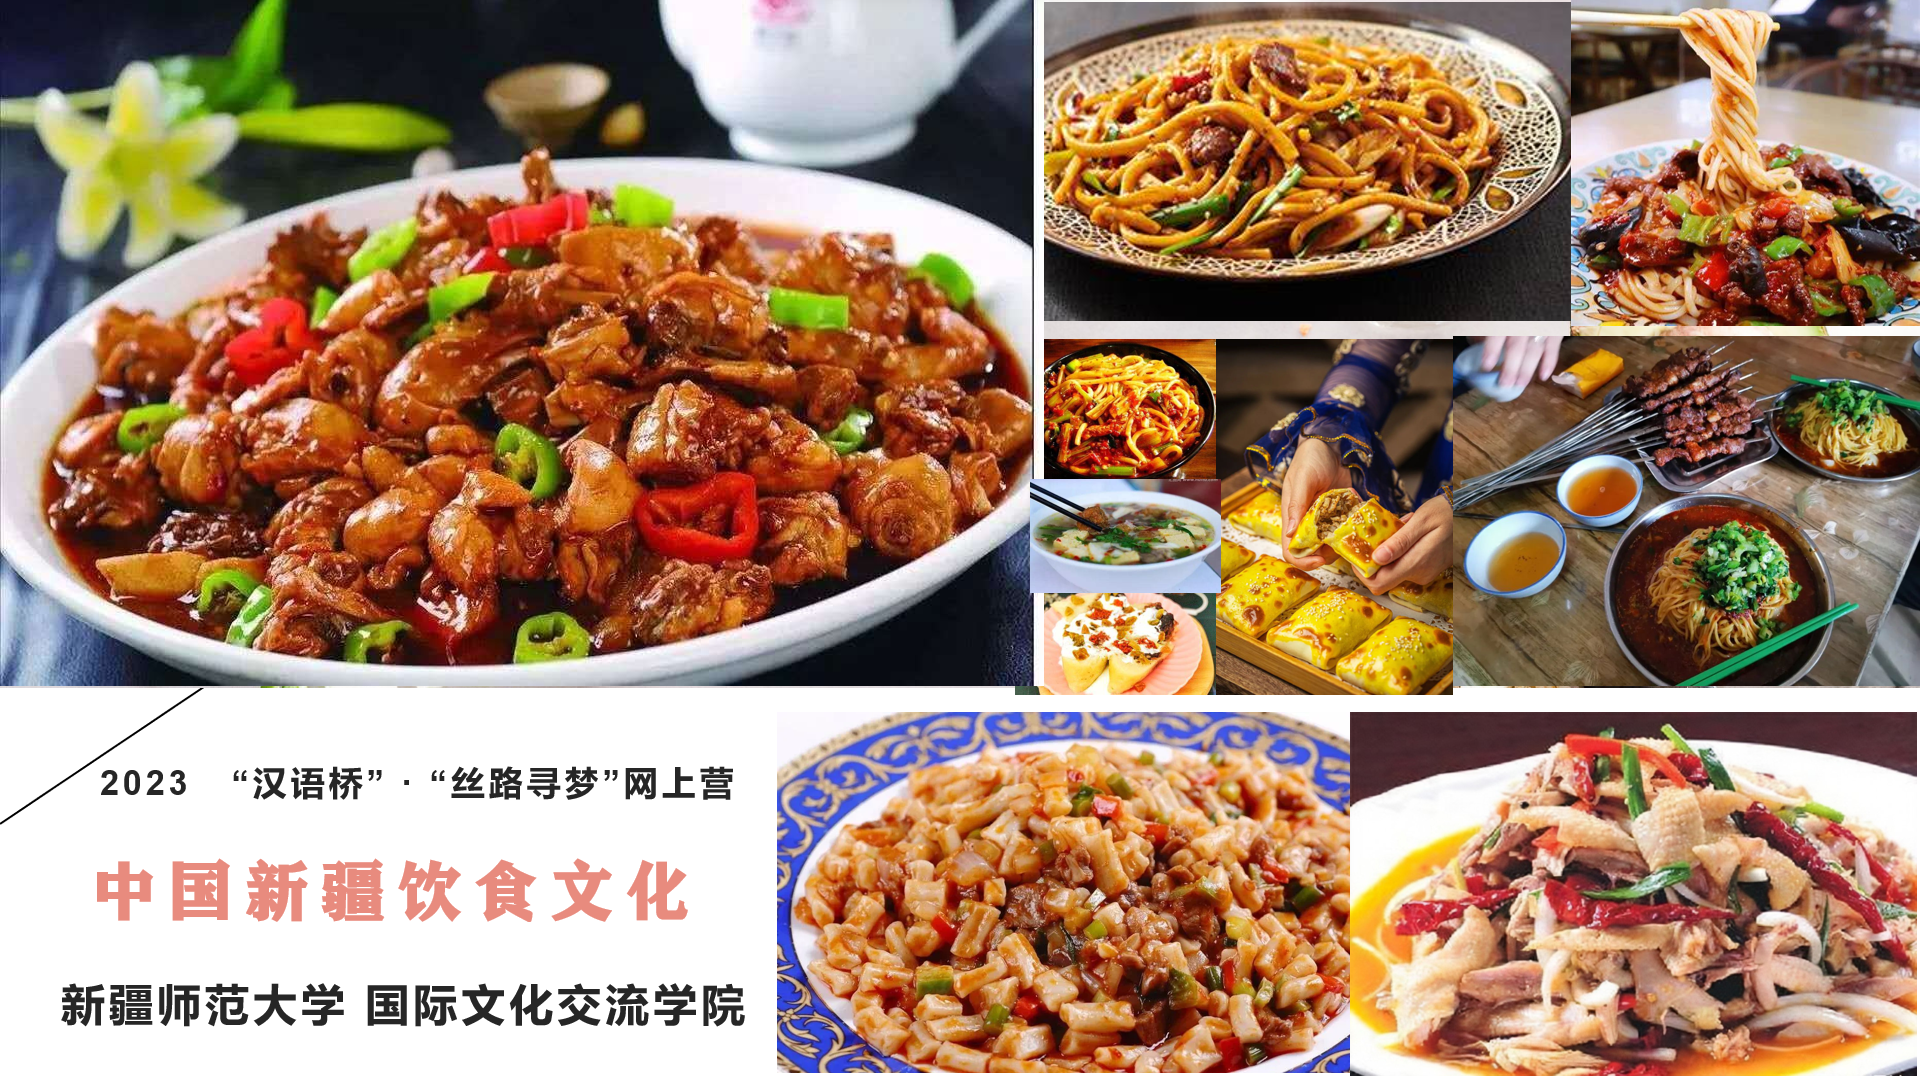 Food culture in Xinjiang, China